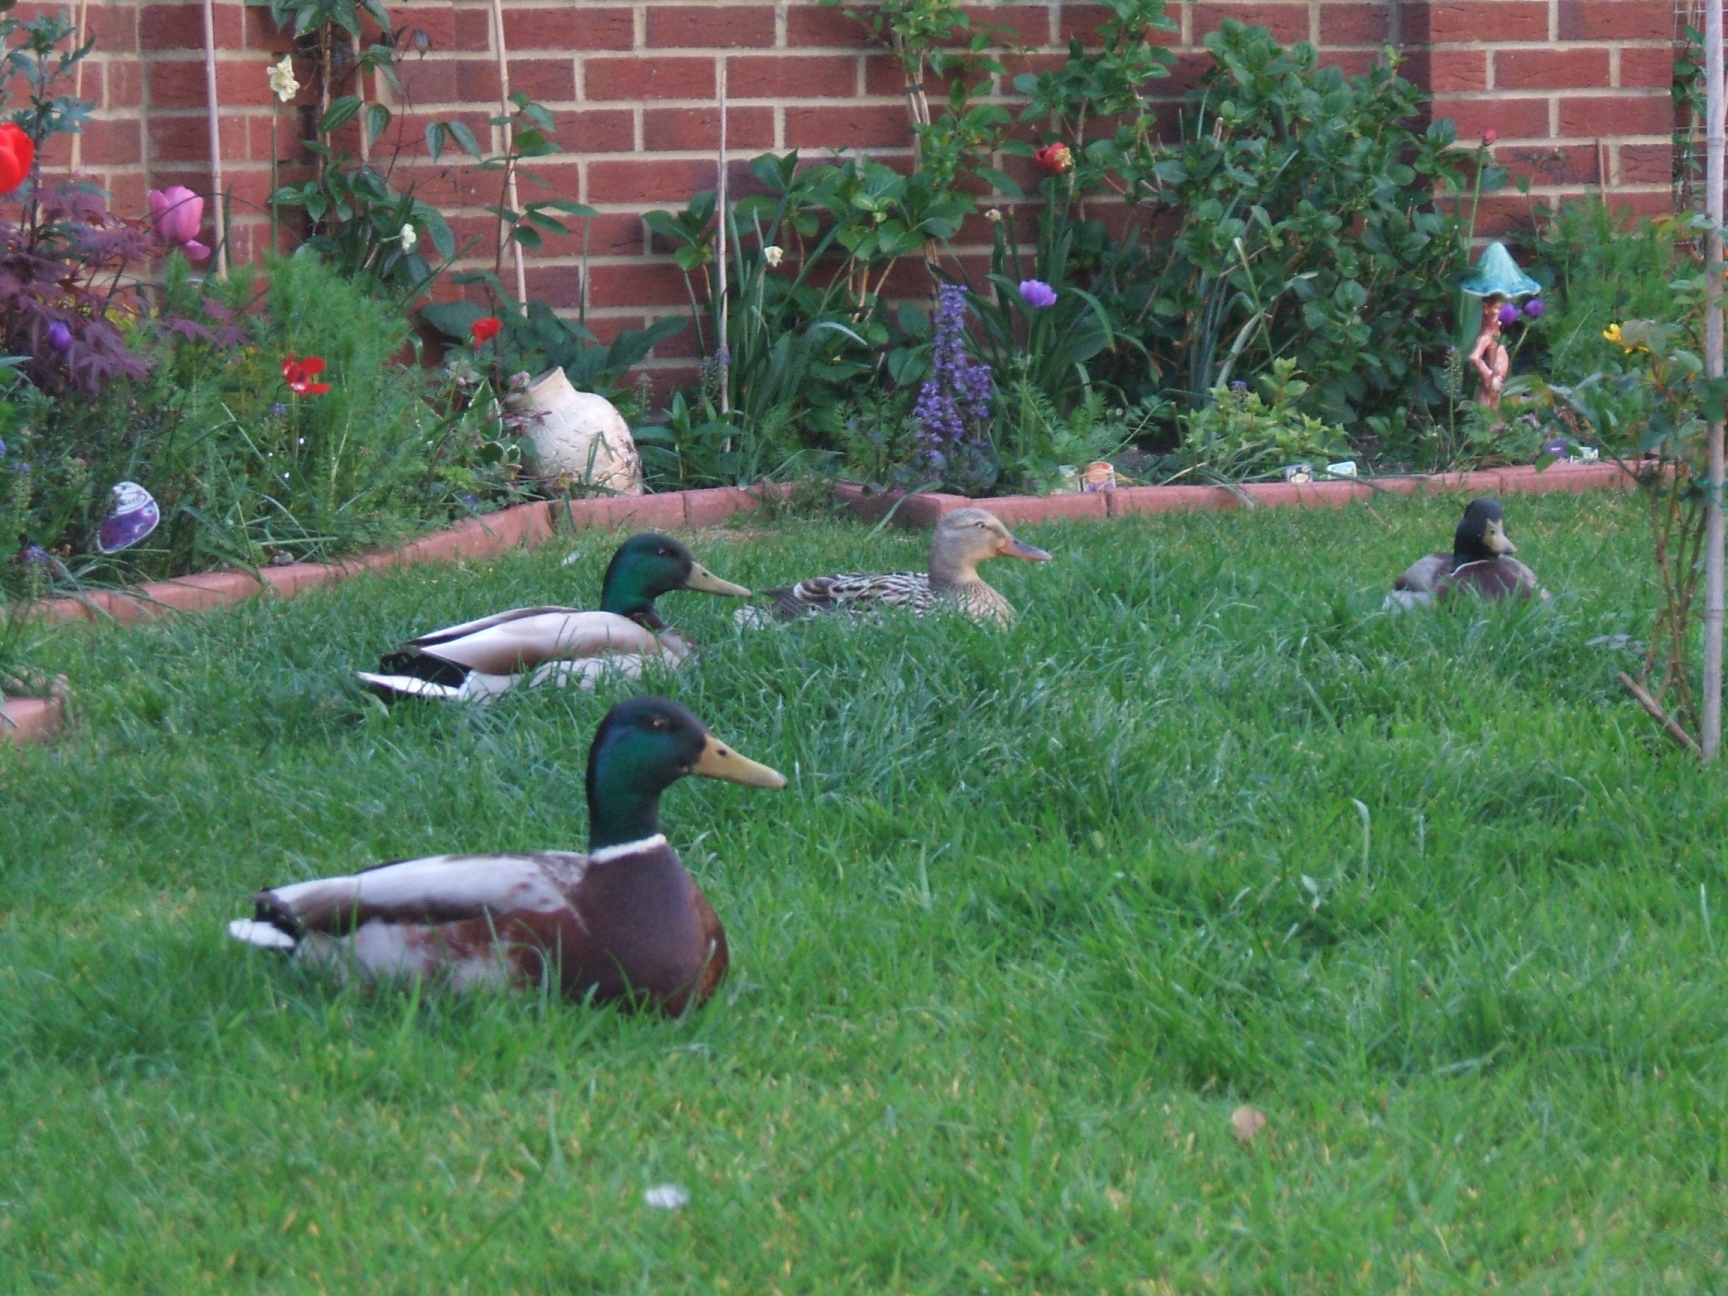 Ducks in a garden photo